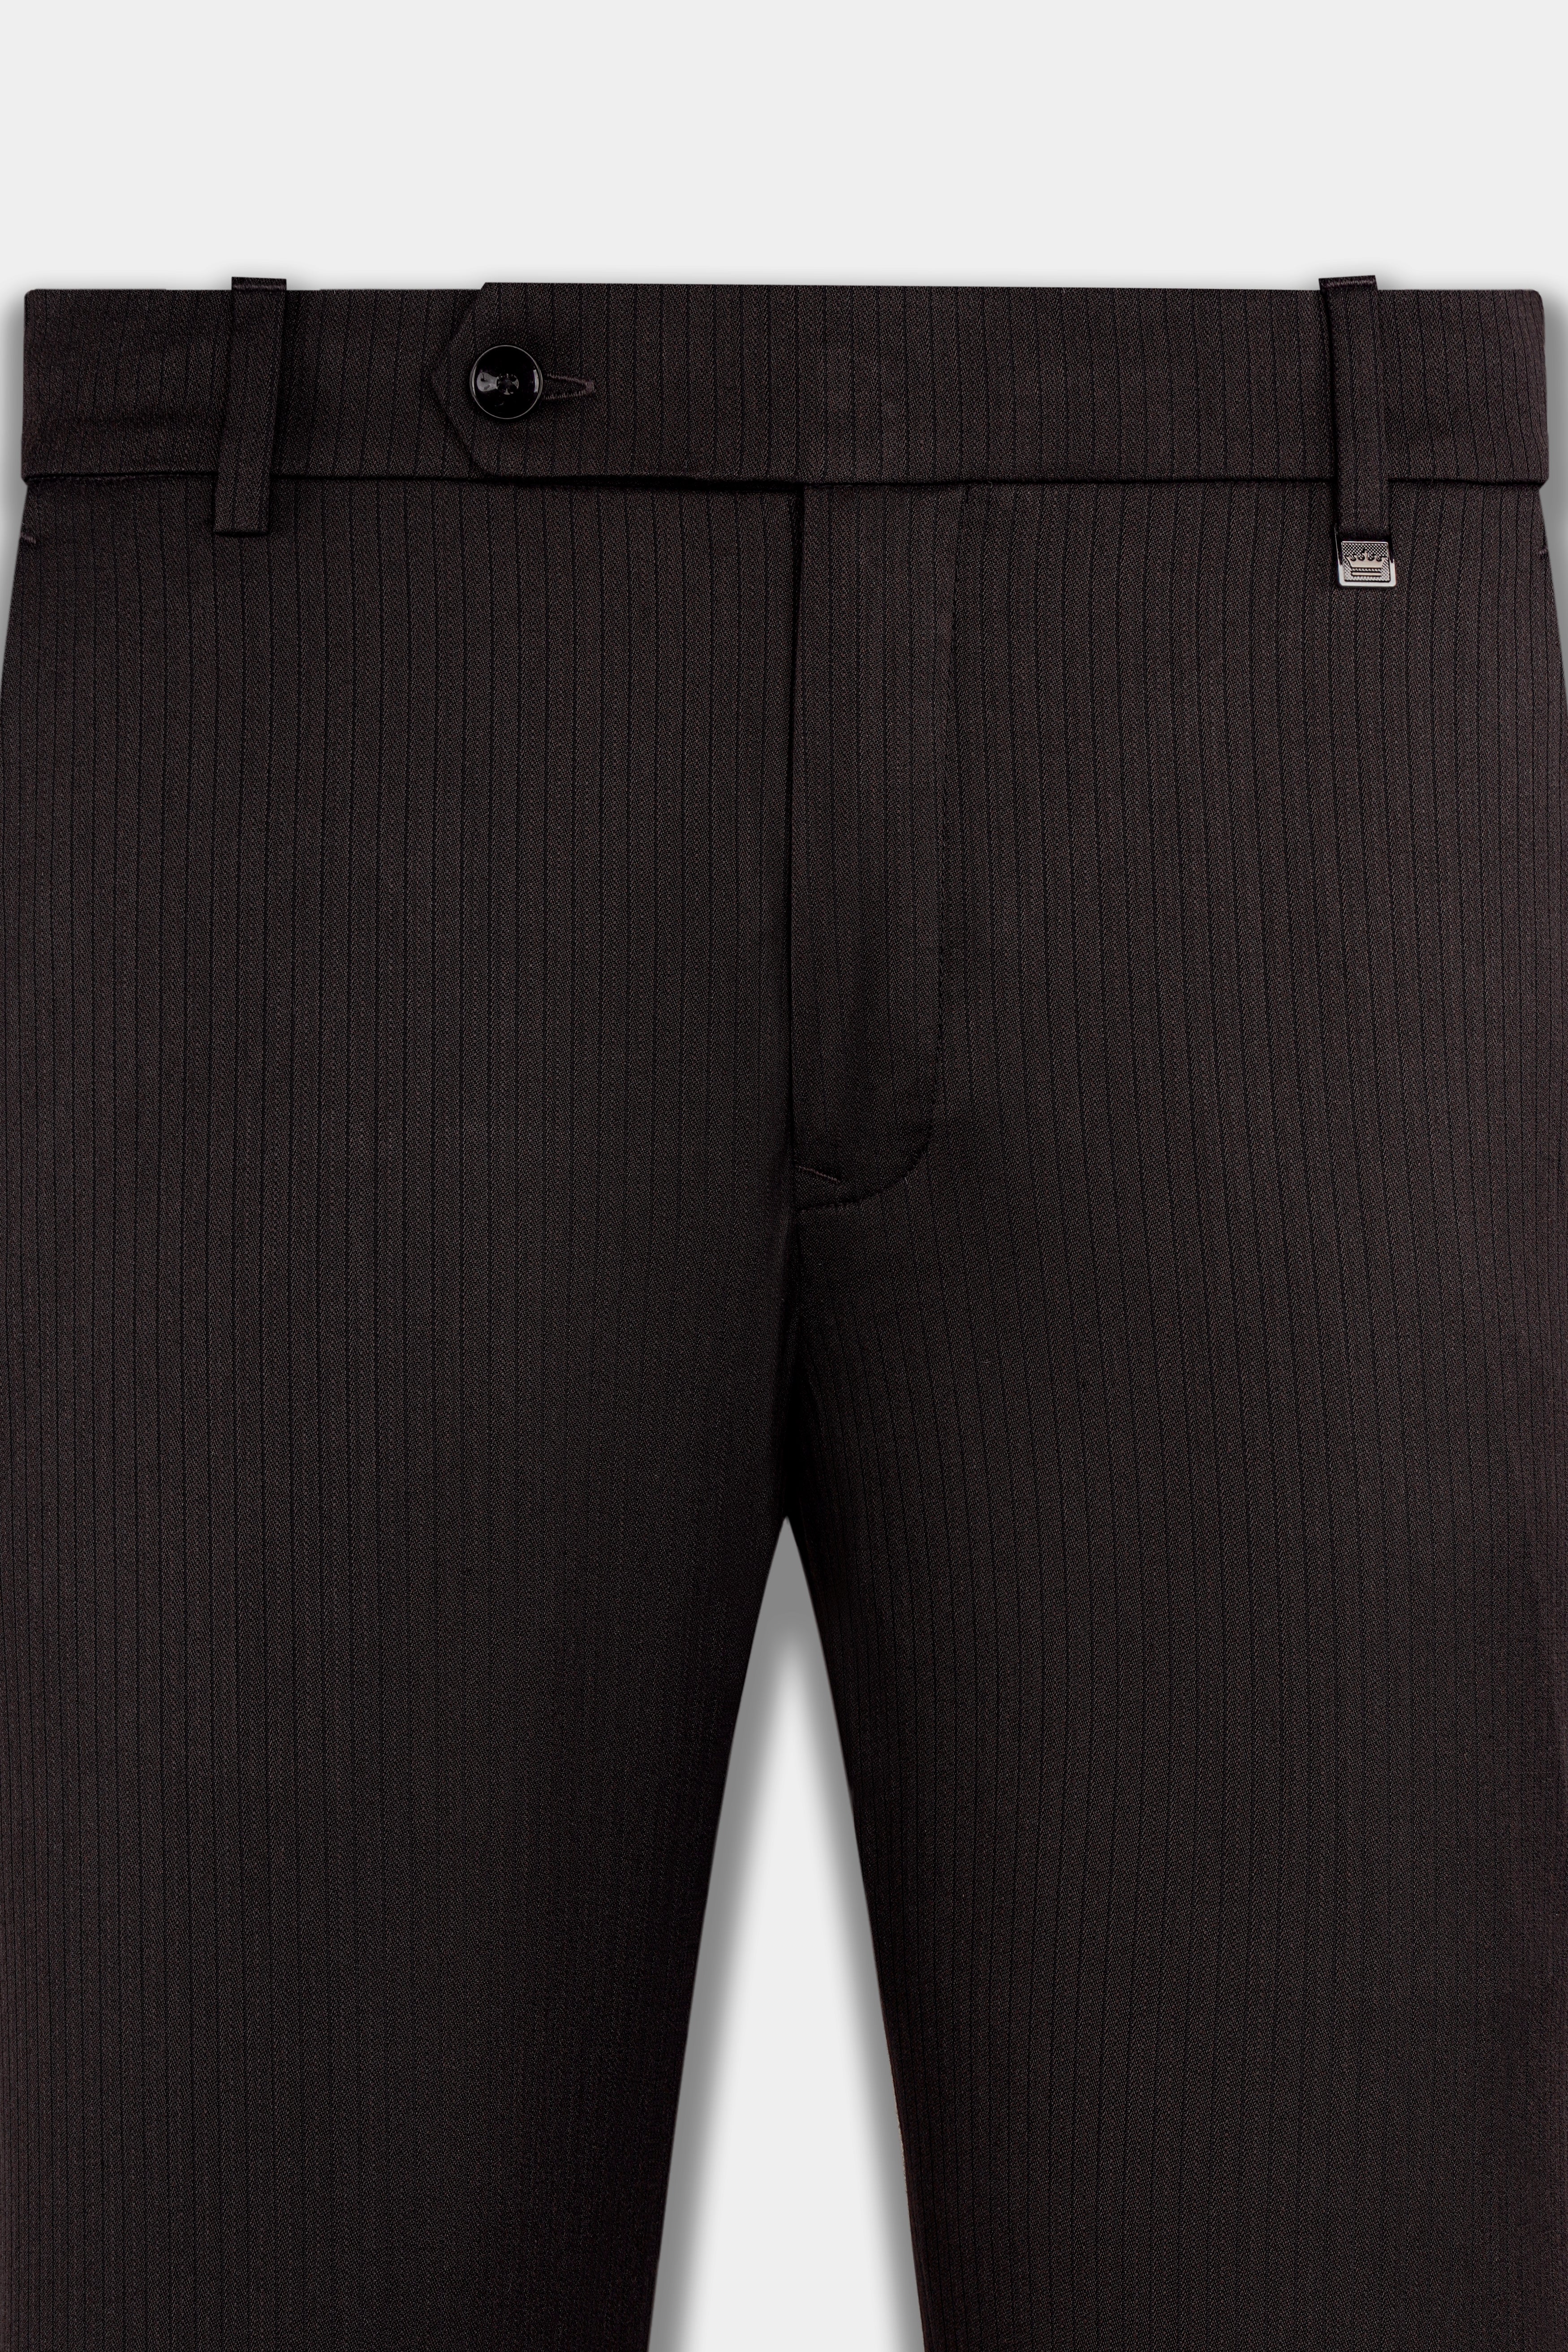 Bruttlyn Men Solid Formal Black Shirt - Buy Bruttlyn Men Solid Formal Black  Shirt Online at Best Prices in India | Flipkart.com